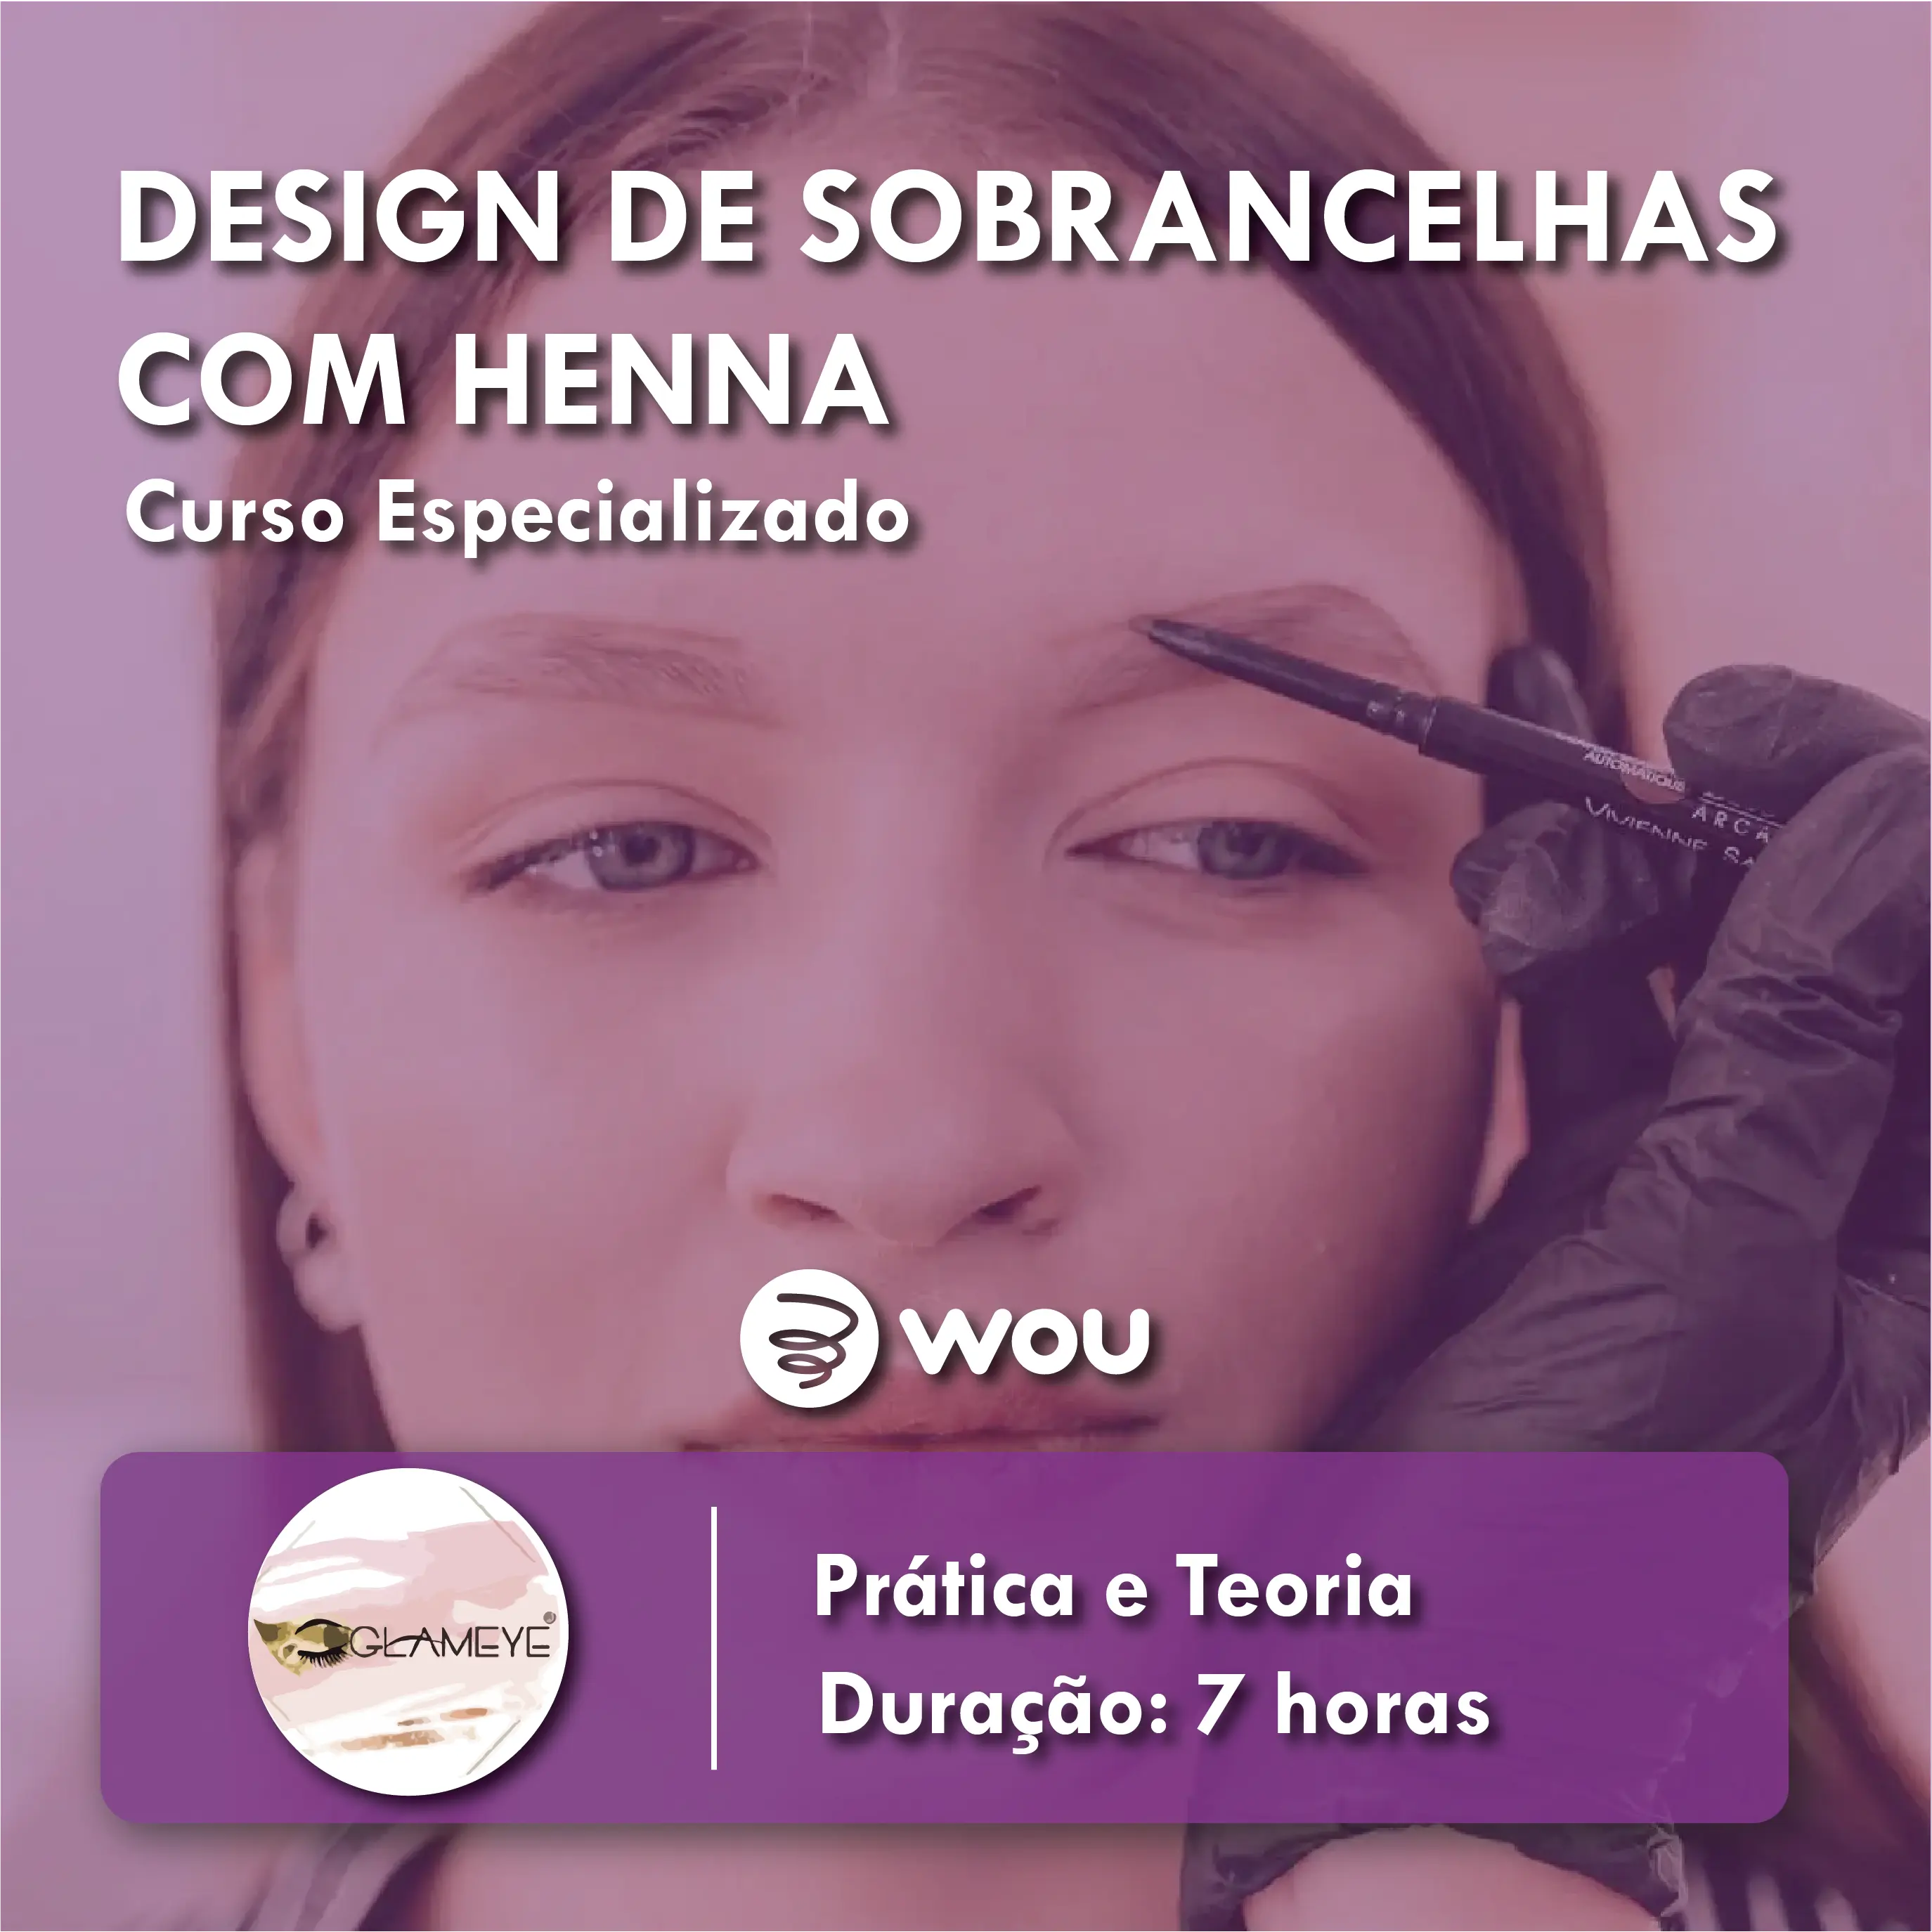 Curso de Design de Sobrancelhas com Henna no Porto